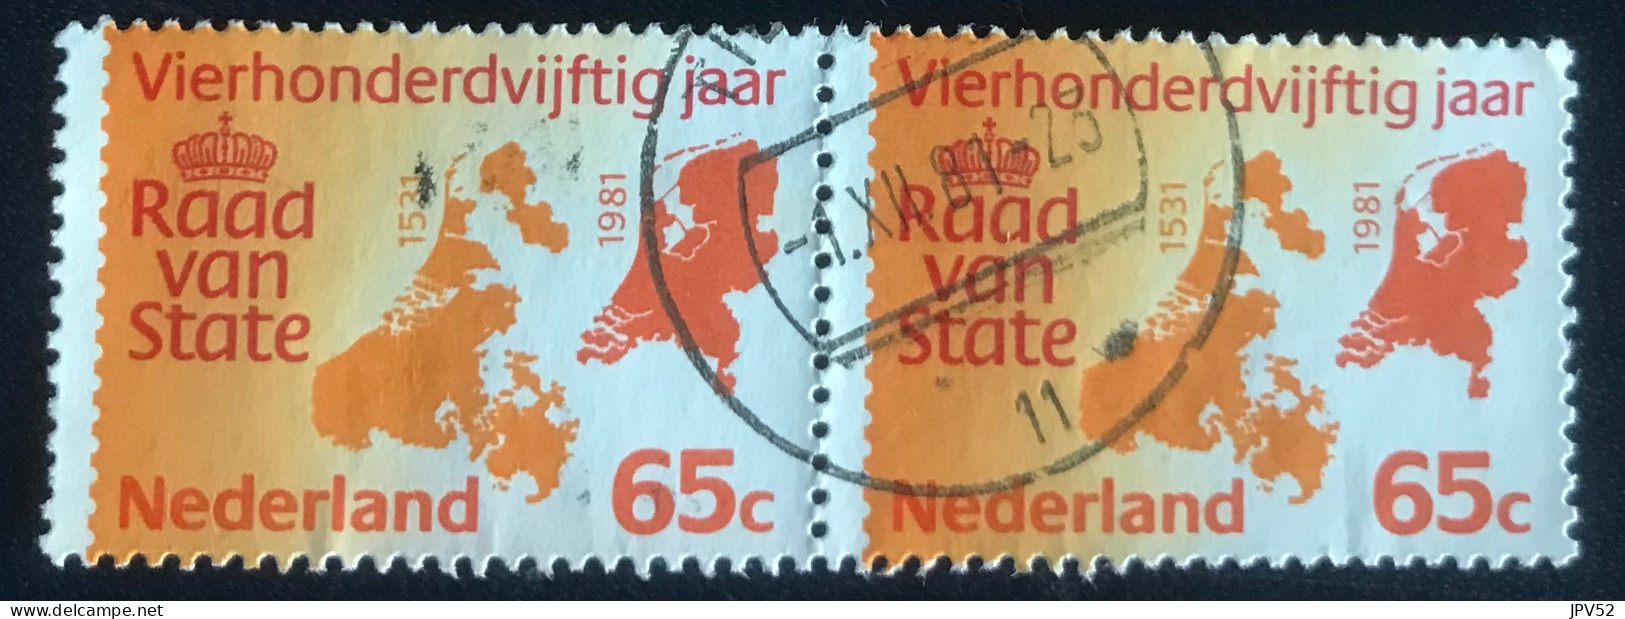 Nederland - C3/49 - 1981 - (°)used - Michel 1188 - 450j Raad Van State - Usati